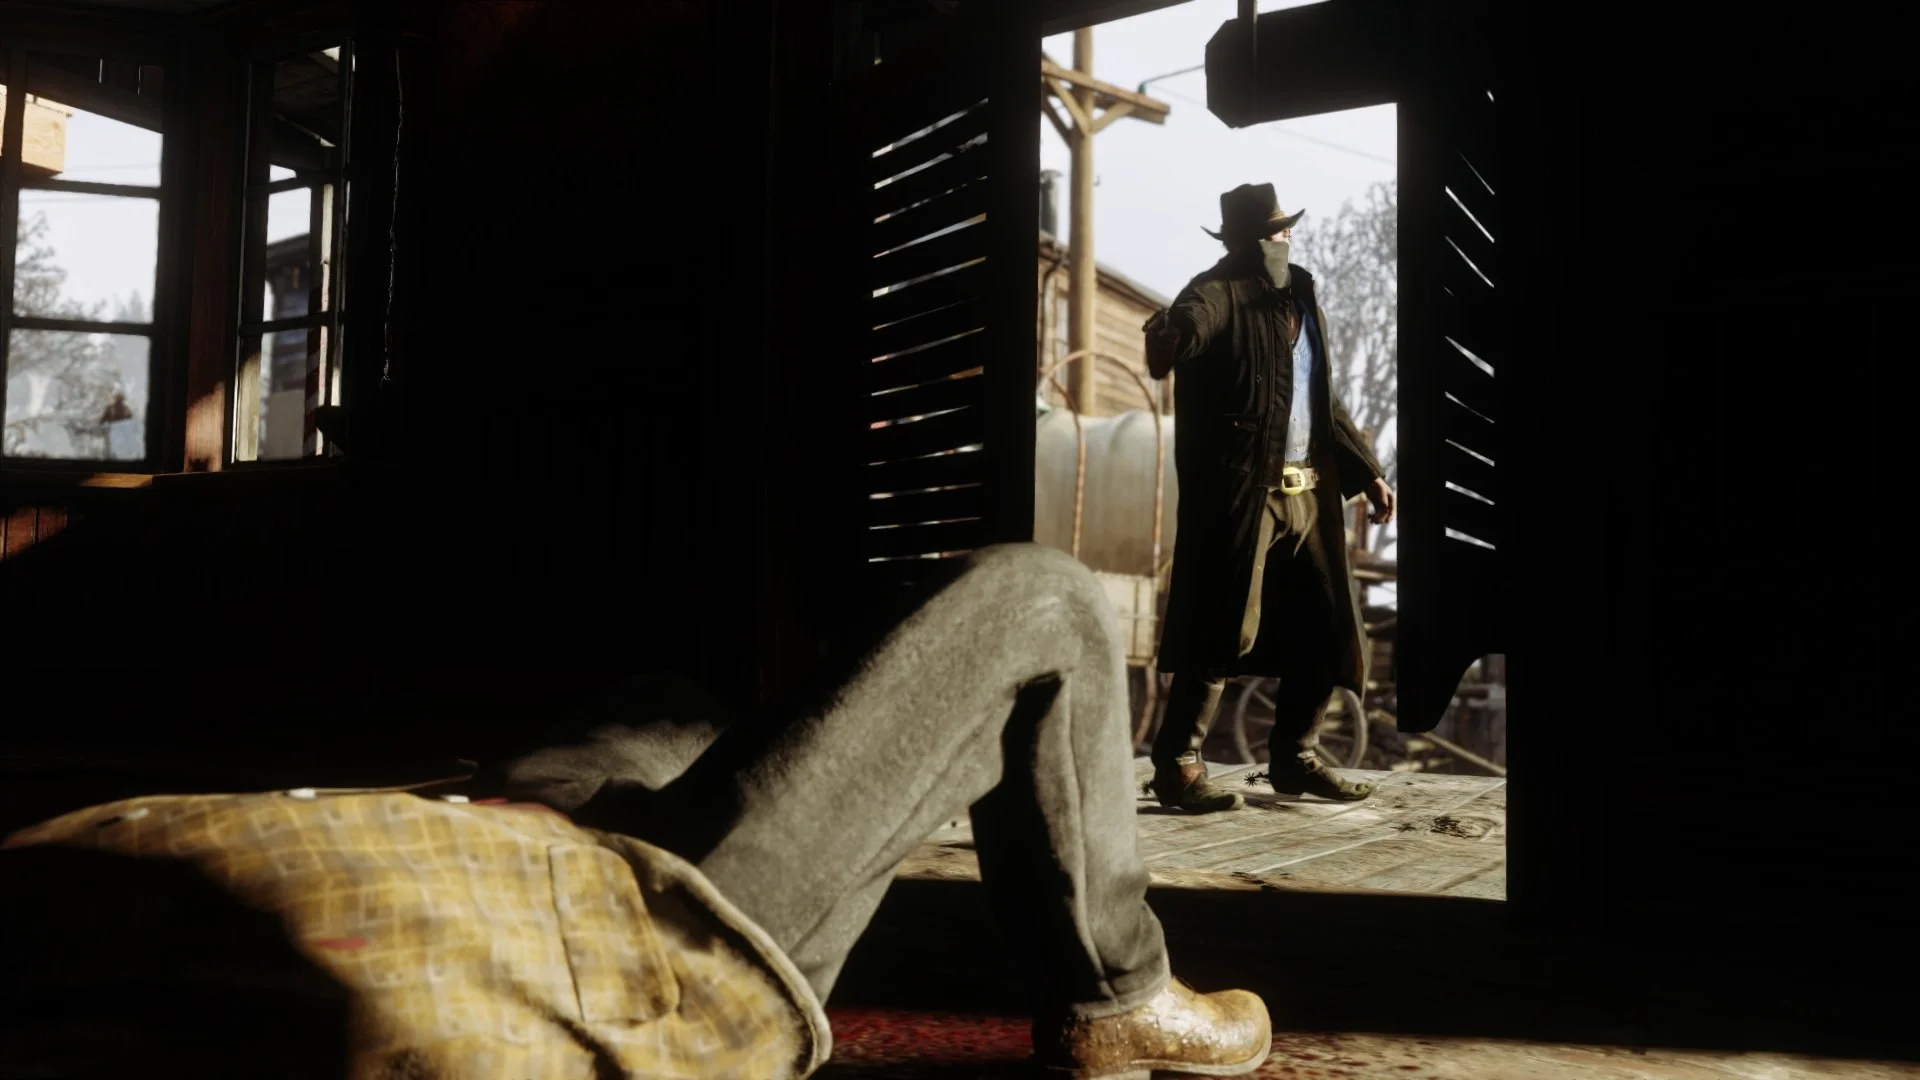 Борода главного героя Red Dead Redemption 2 растёт в реальном времени - фото 9